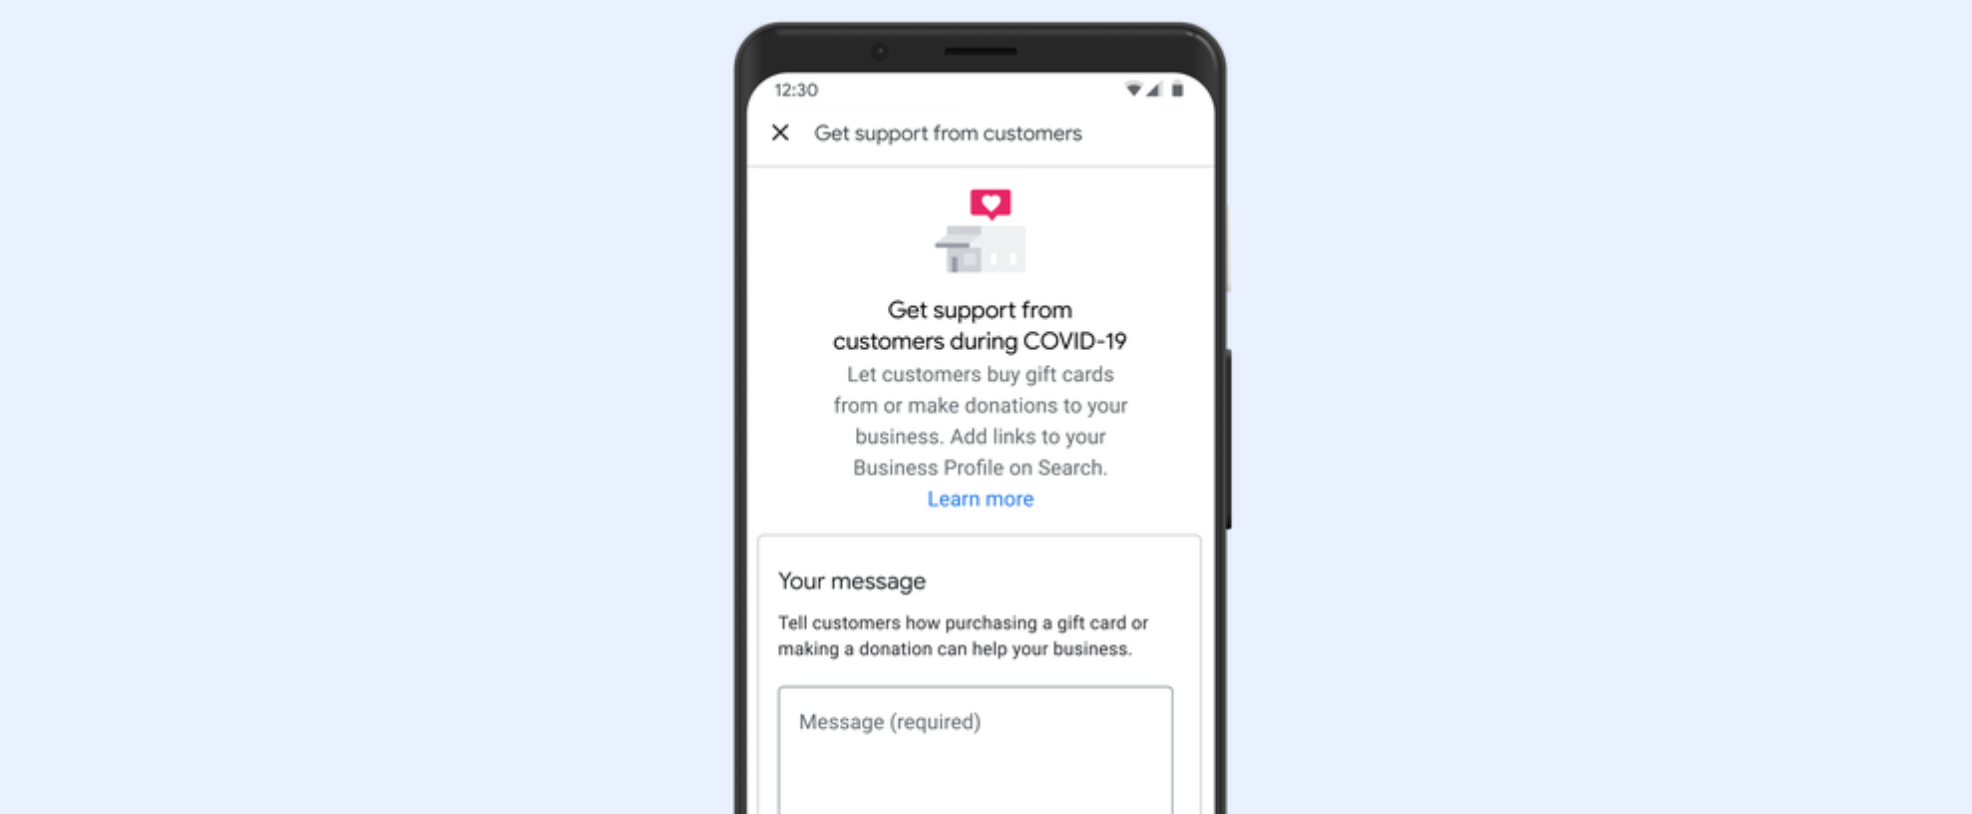 تضيف Google طريقة للأشخاص لدعم الأنشطة التجارية المحلية: روابط للتبرعات وبطاقات الهدايا المرفقة بالملفات الشخصية للأعمال